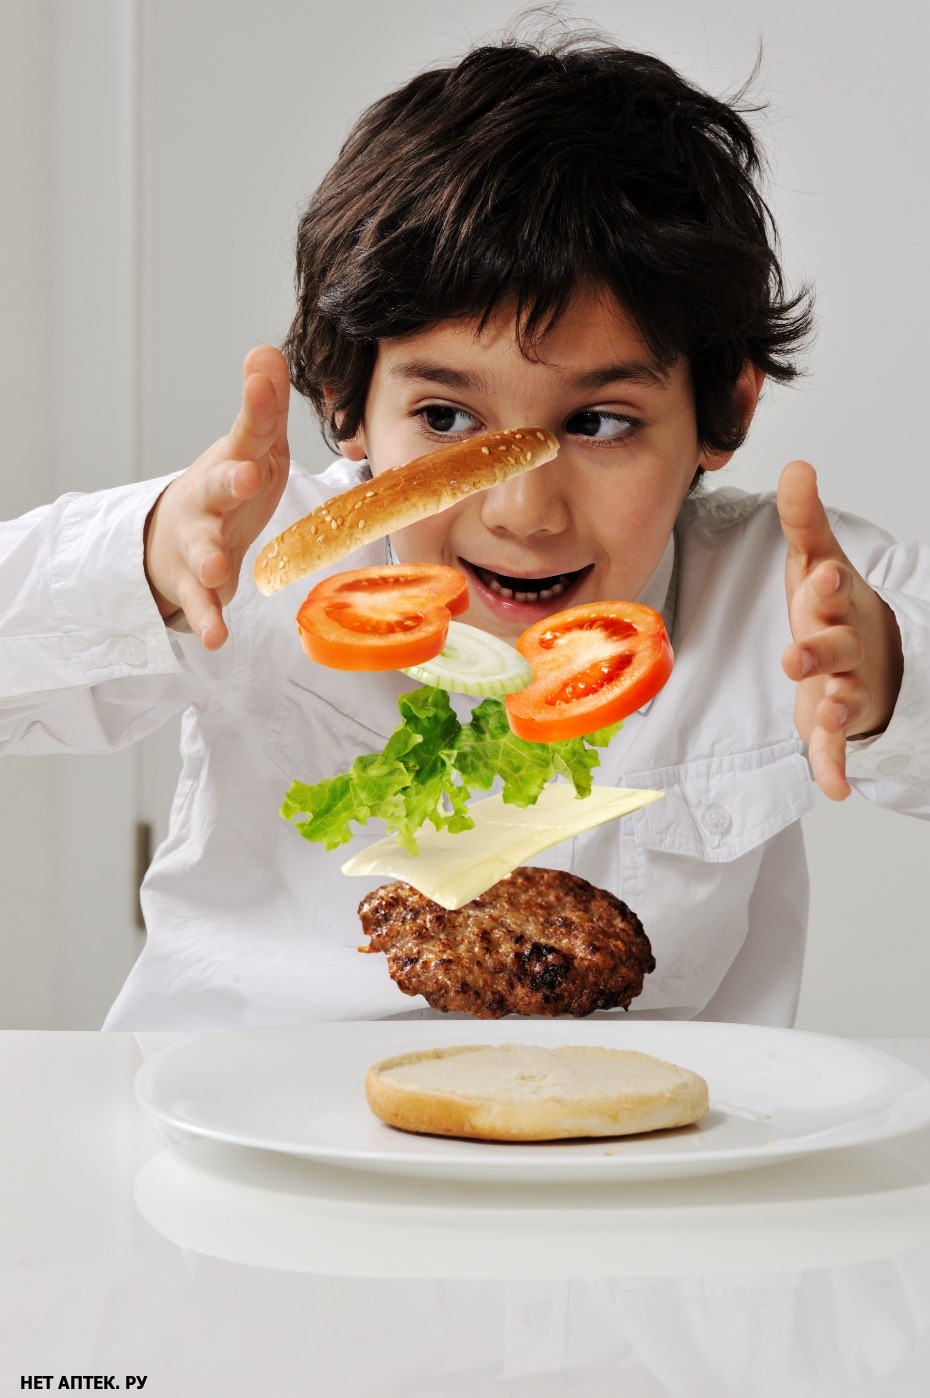 Сколько ребенок ест? – вопрос, беспокоящий родителей